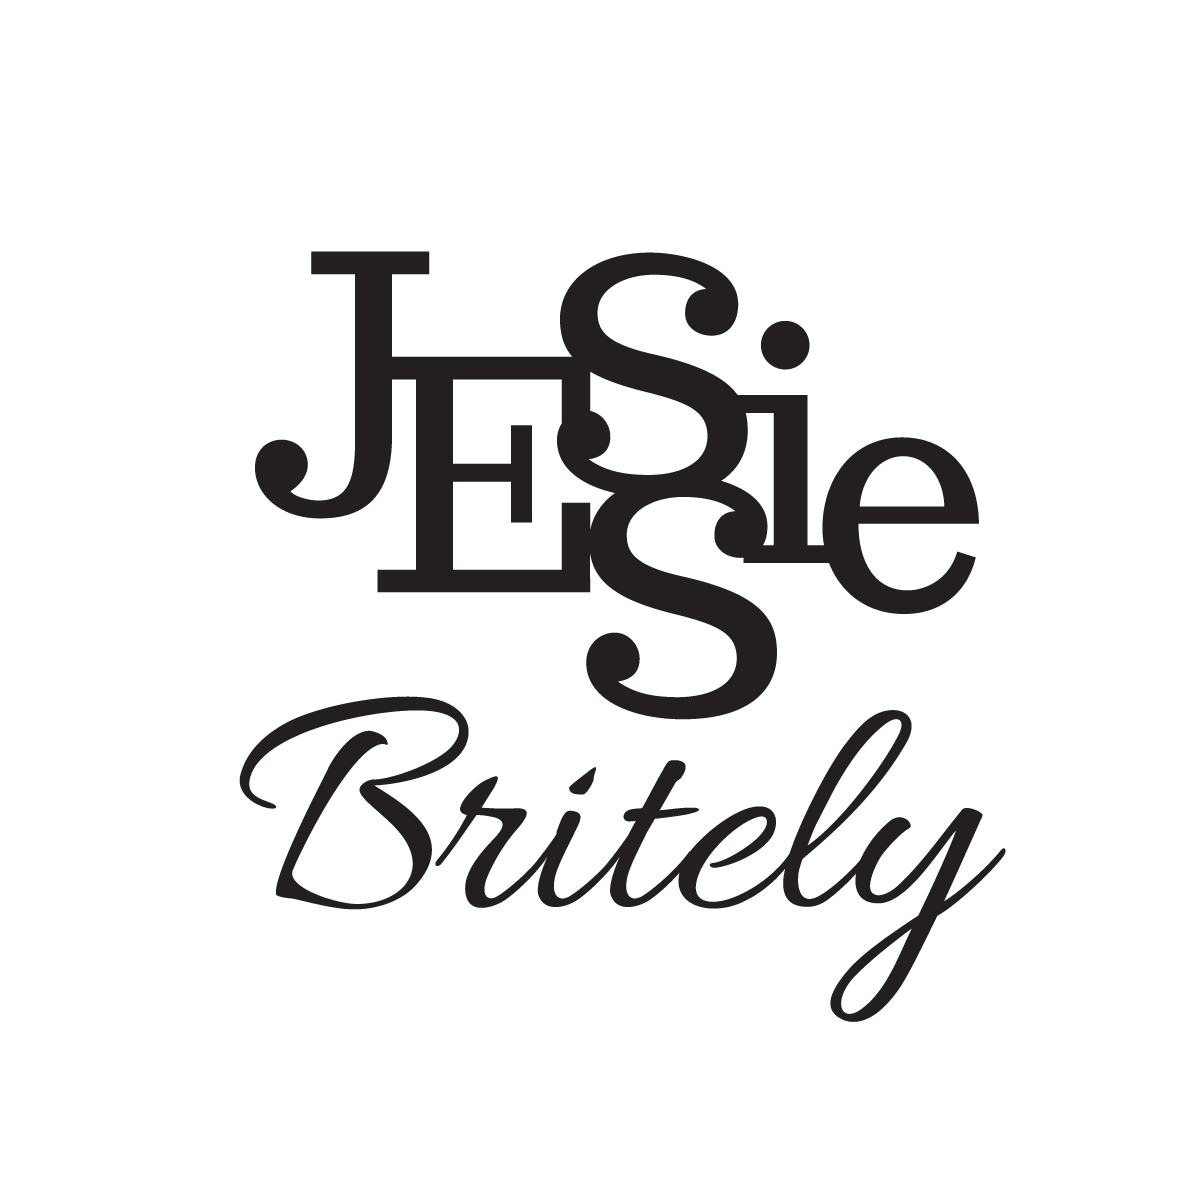 Jessie Britely